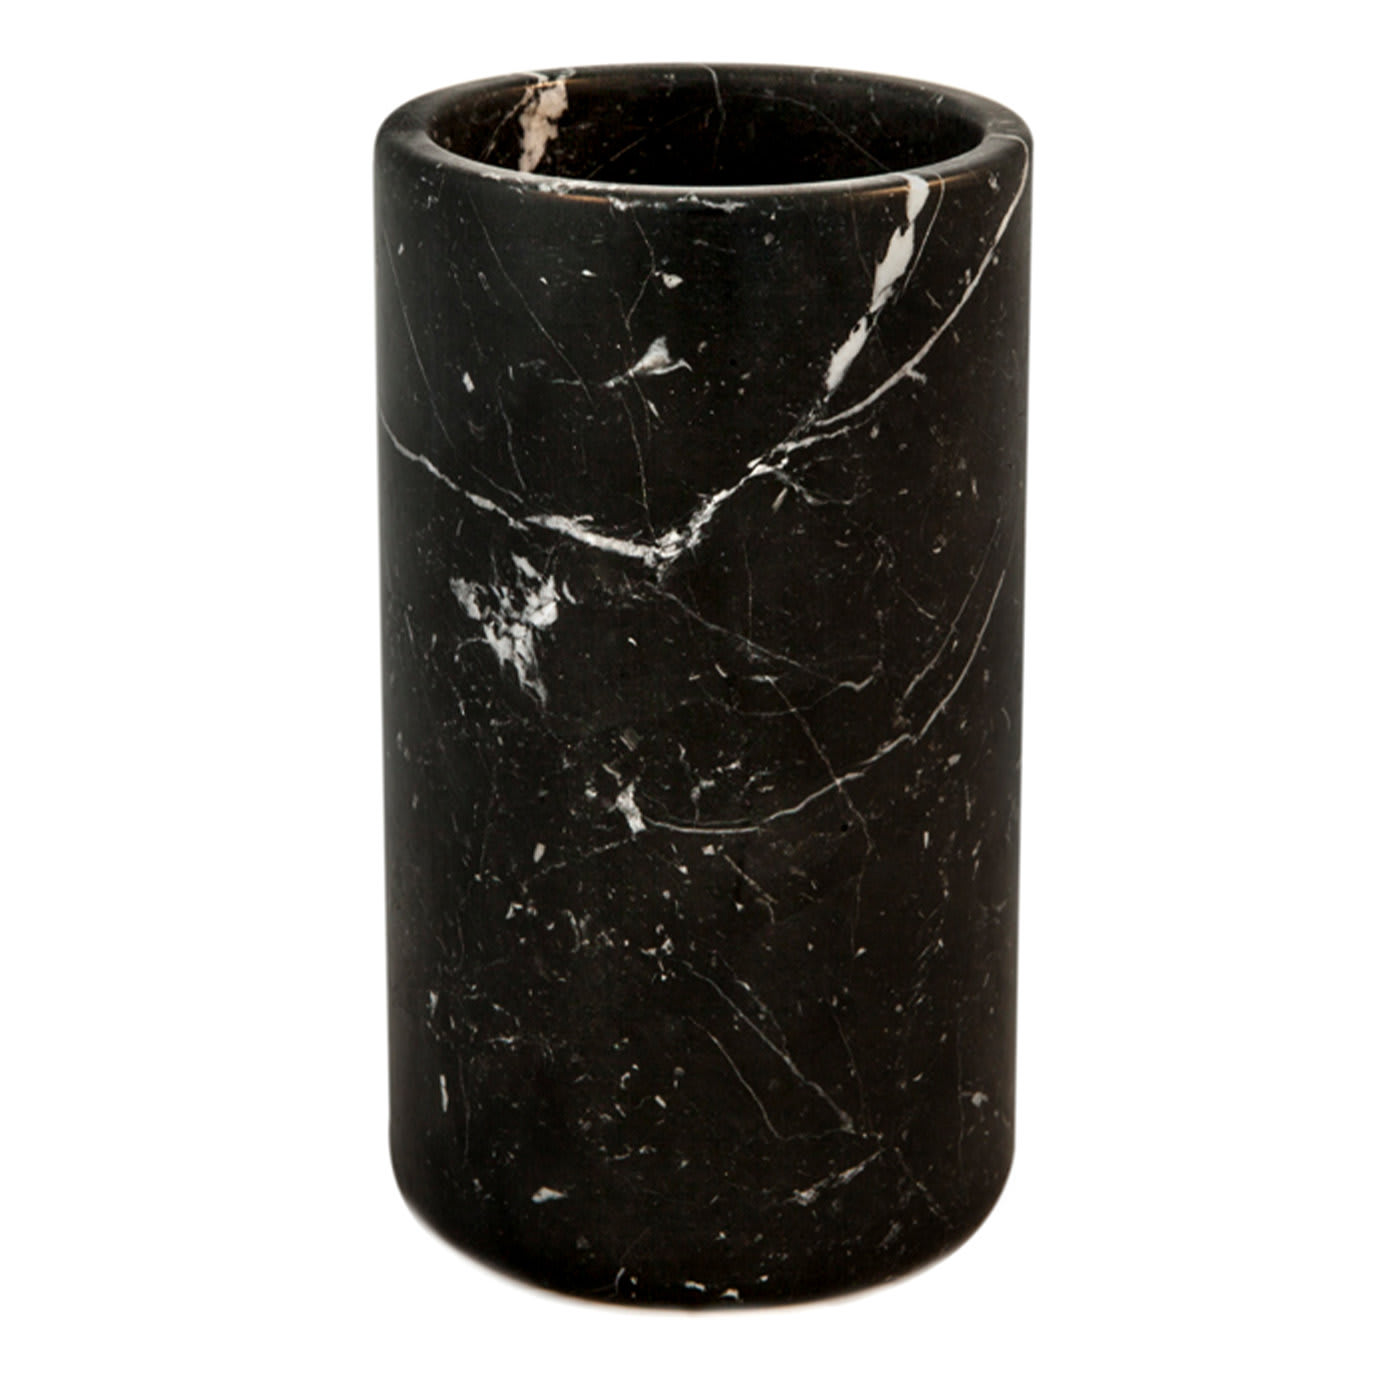 Black Marble Utensil Holder - FiammettaV Home Collection